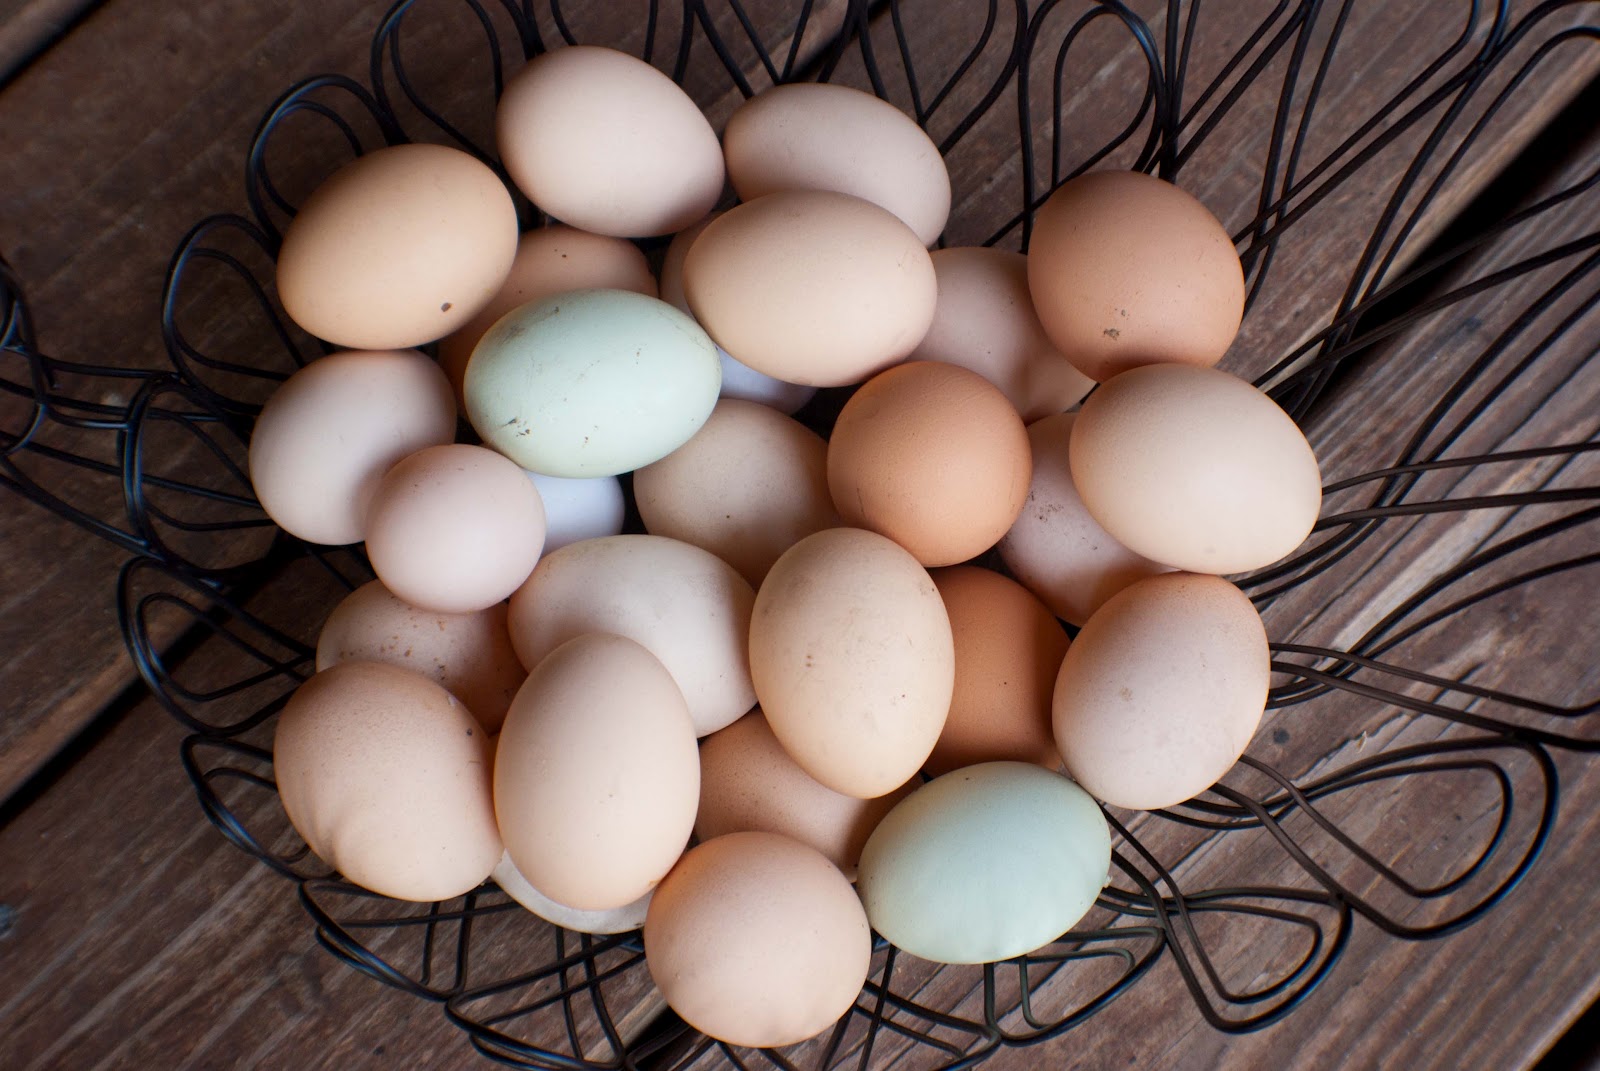 archer-s-acres-fresh-eggs-for-sale